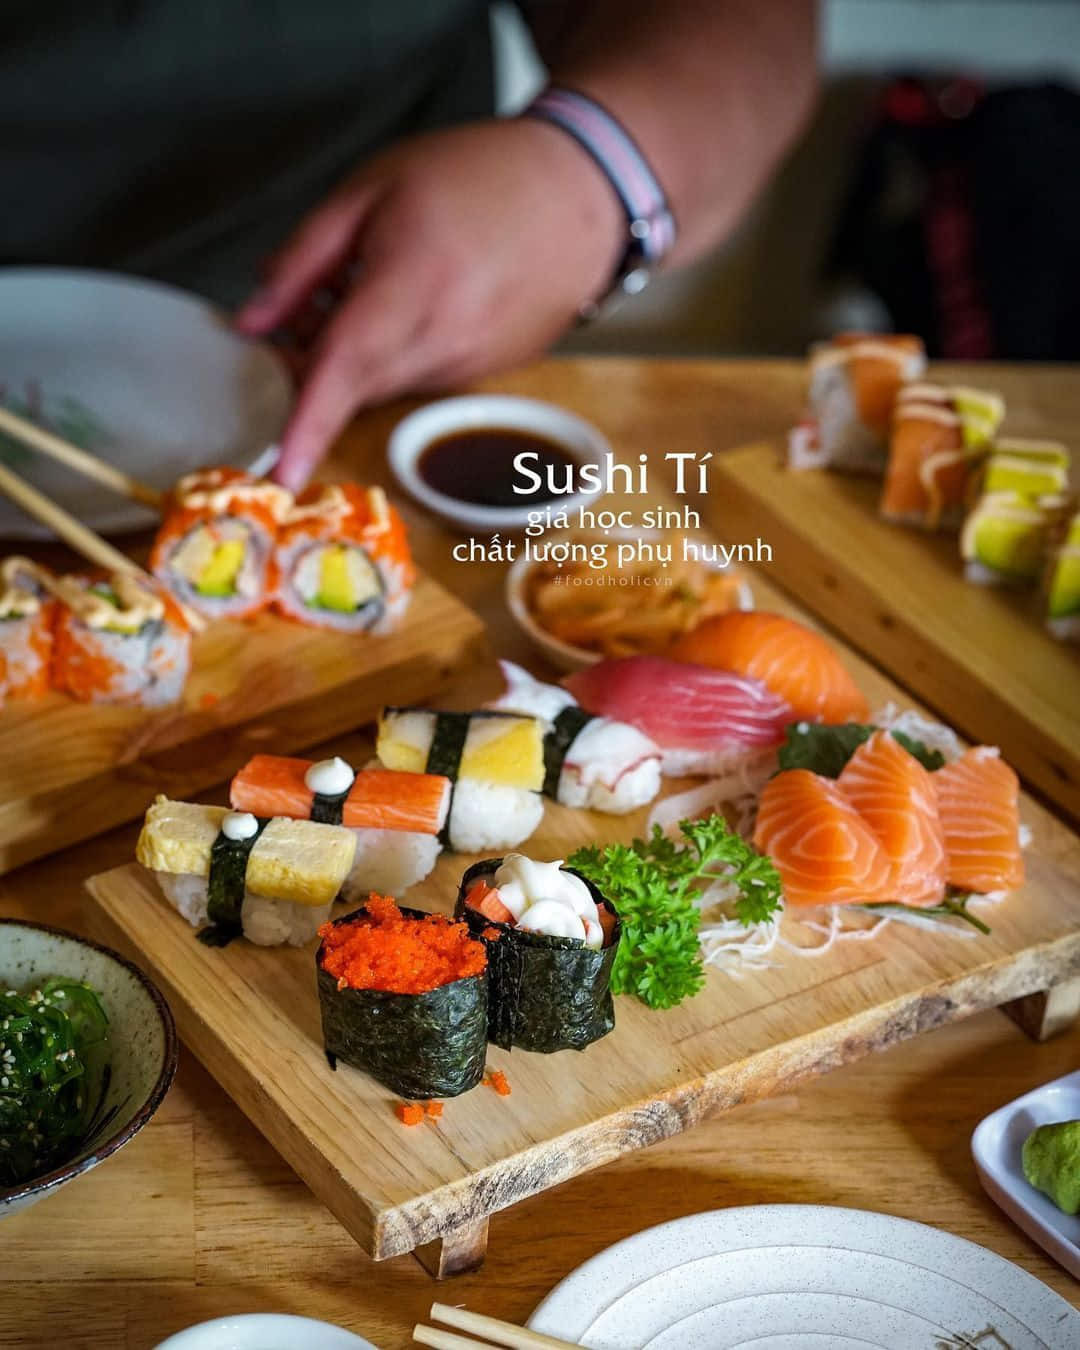 Tphcm] Quán Sushi Giá Học Sinh Chất Lượng Phụ Huynh | Grab Vn